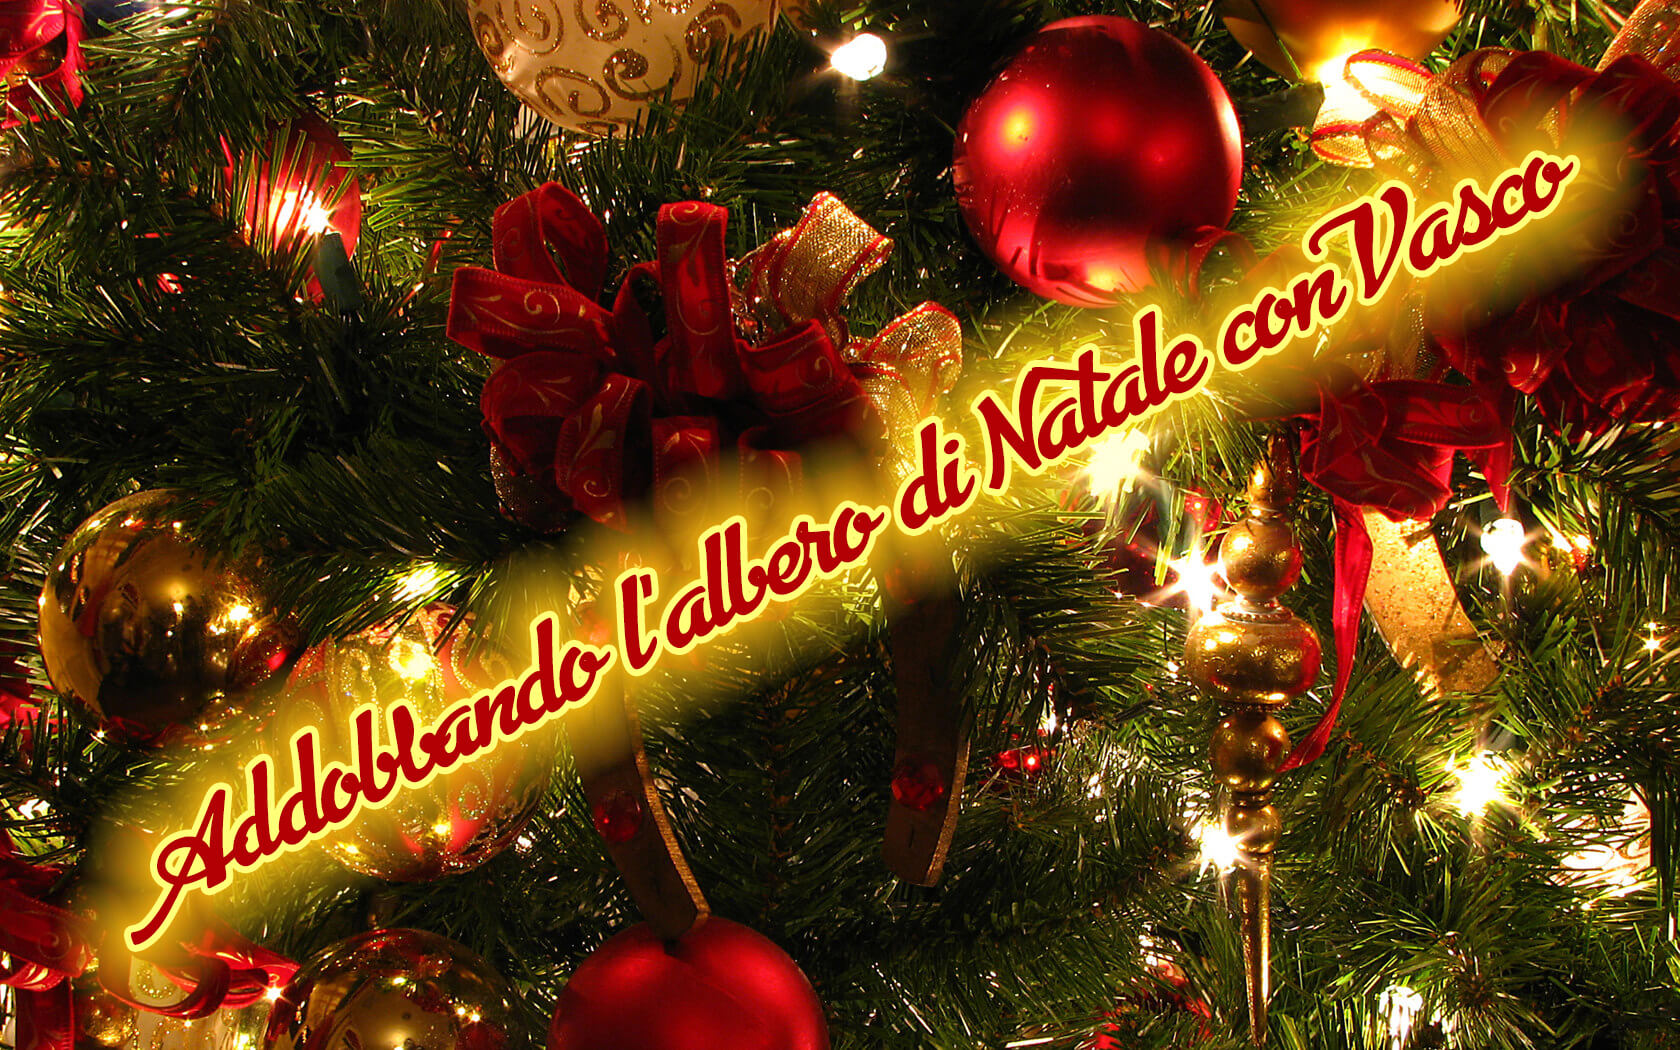 Albero Di Natale Con Fotografie.Quest Anno Faremo L Albero Di Natale Con Vasco